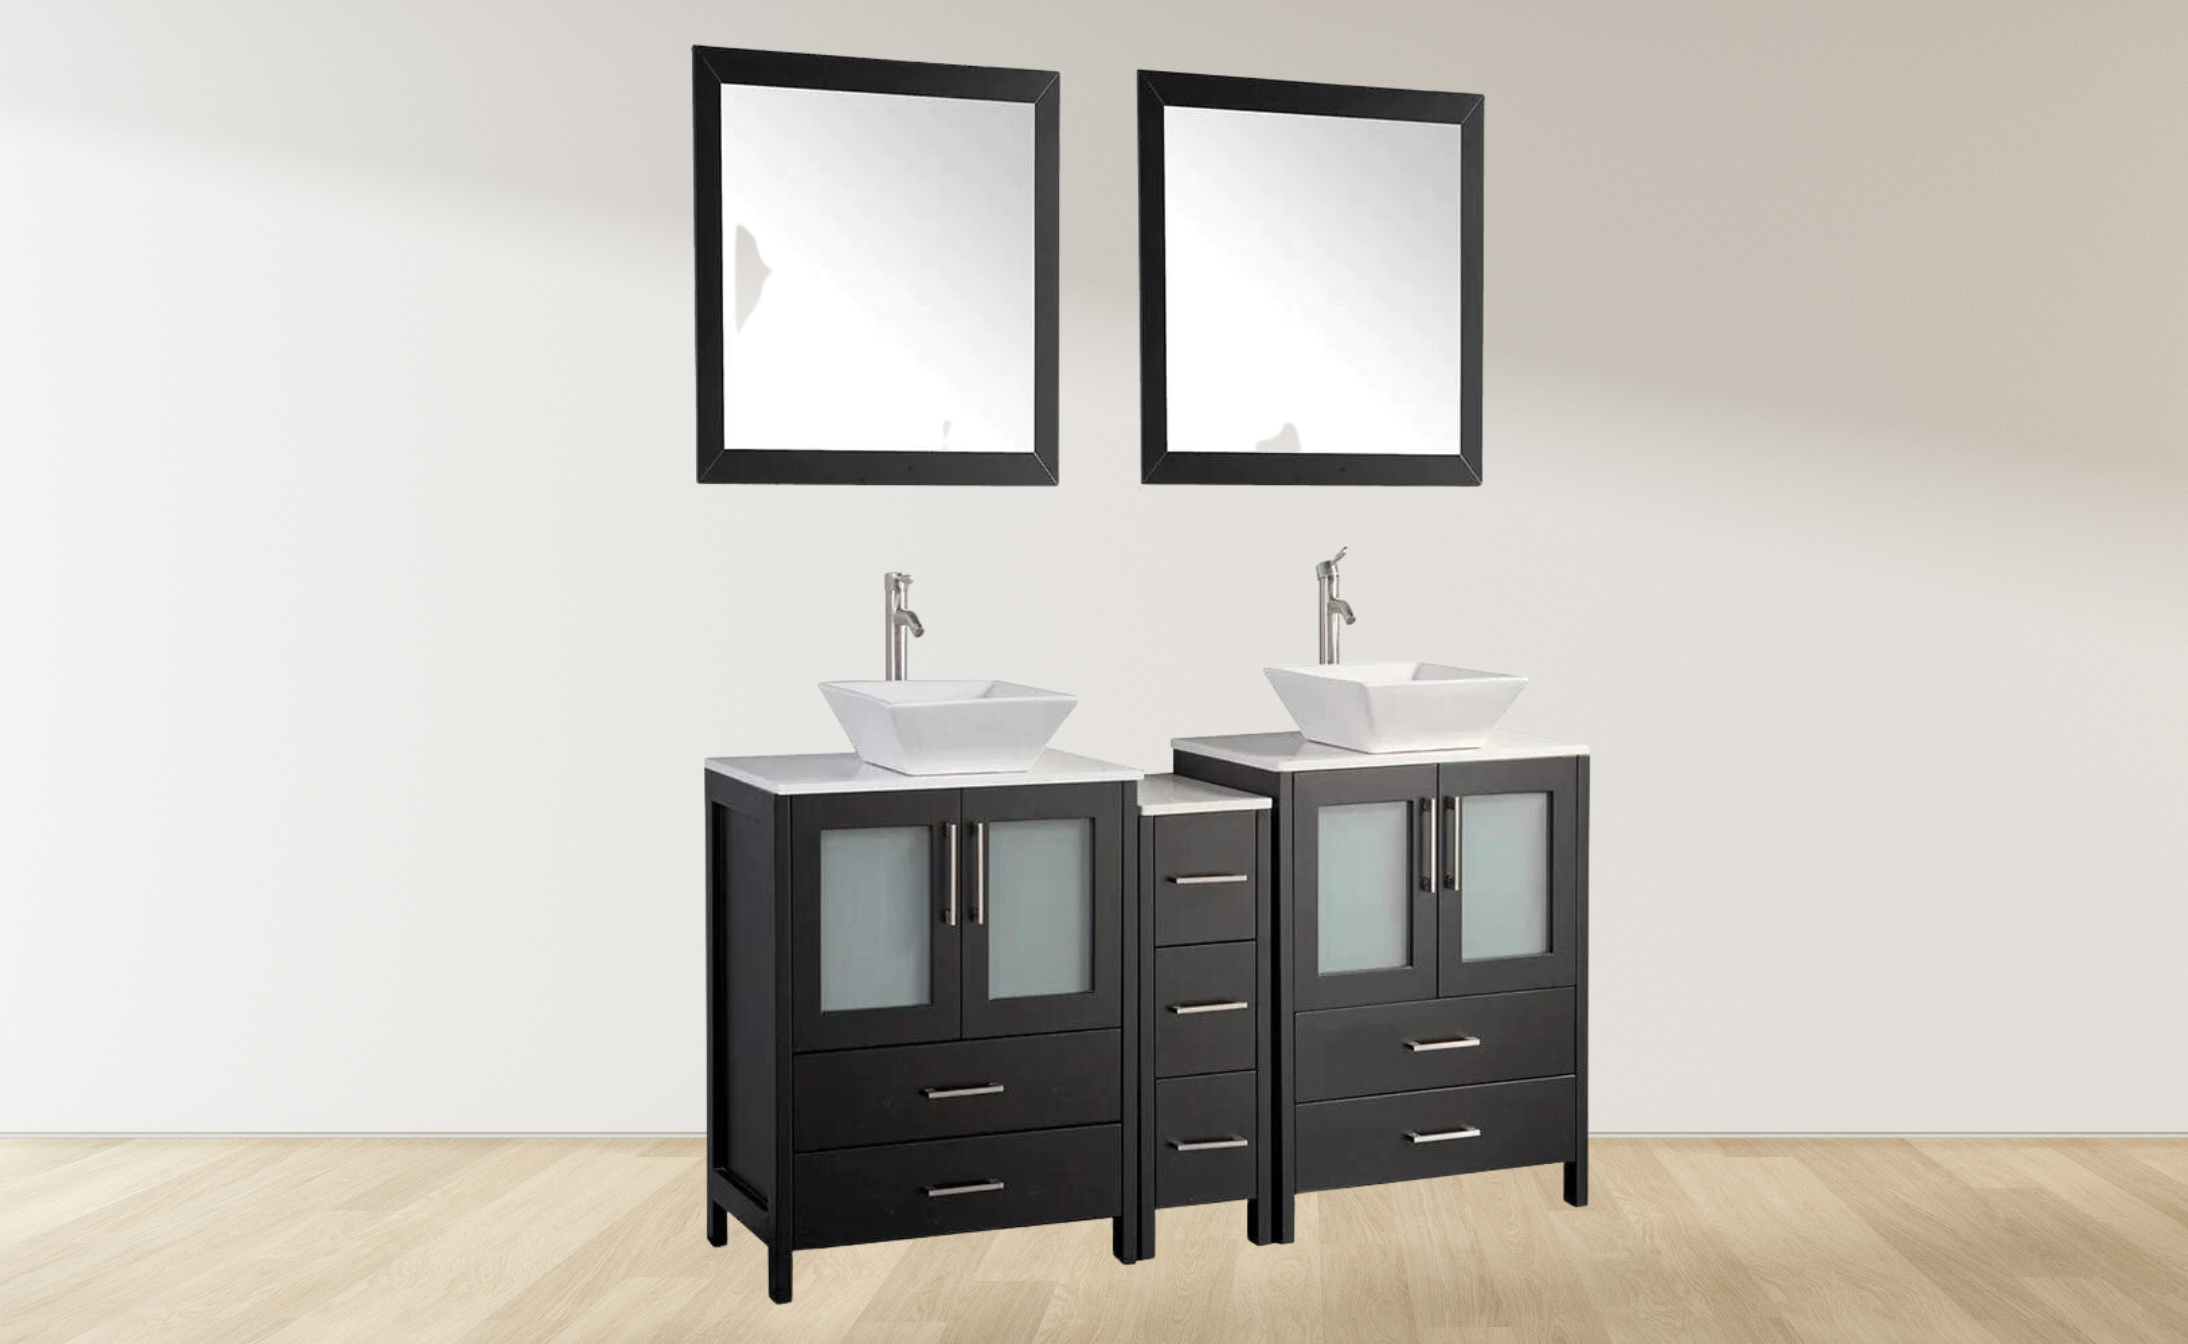 72 in. Double Sink Bathroom Vanity Combo Set in Espresso